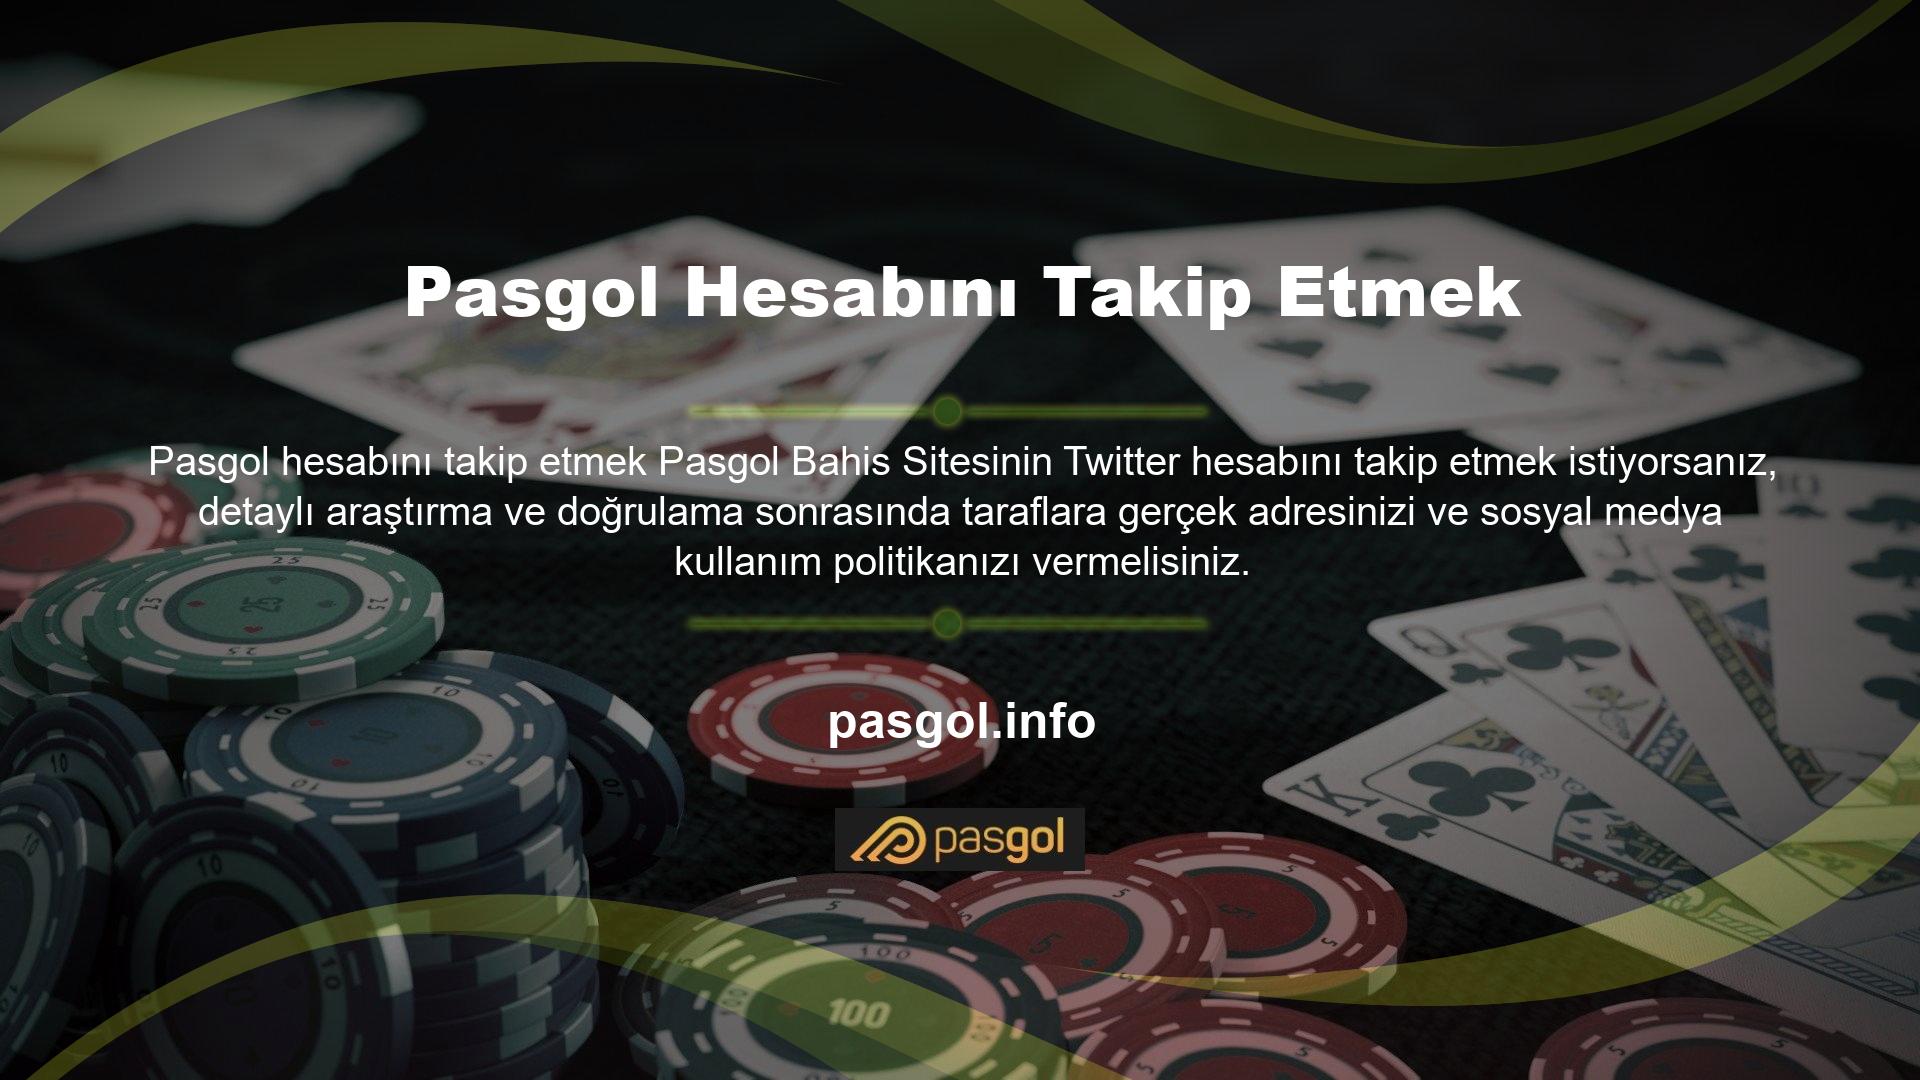 Pasgol Twitter hesabına erişim sağlamak için kullanıcıların öncelikle Twitter adı verilen sosyal medya platformuna tamamen ücretsiz bir kayıt işlemini tamamlamaları gerekmektedir